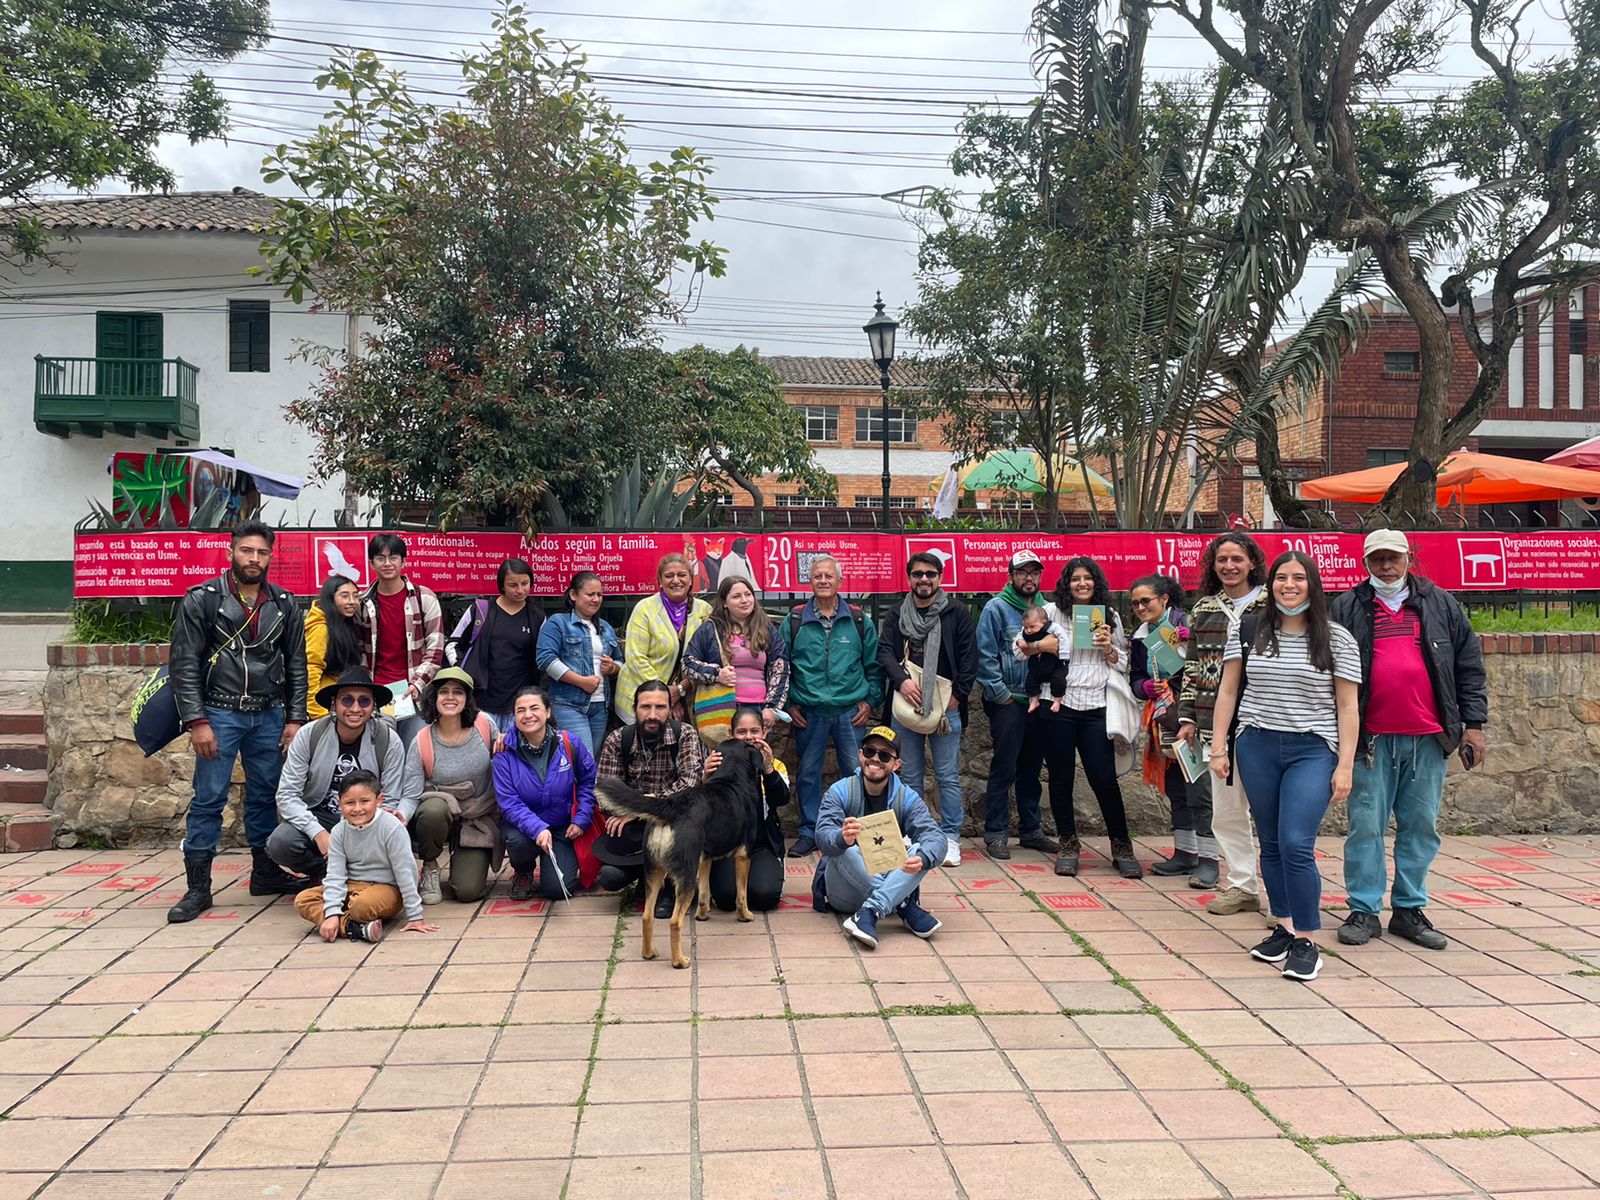 Grupo de personas posan en plaza pública para fotografía grupal. Se observa un perro en el centro y una tela roja detrás con información sobre el patrimonio de Usme.